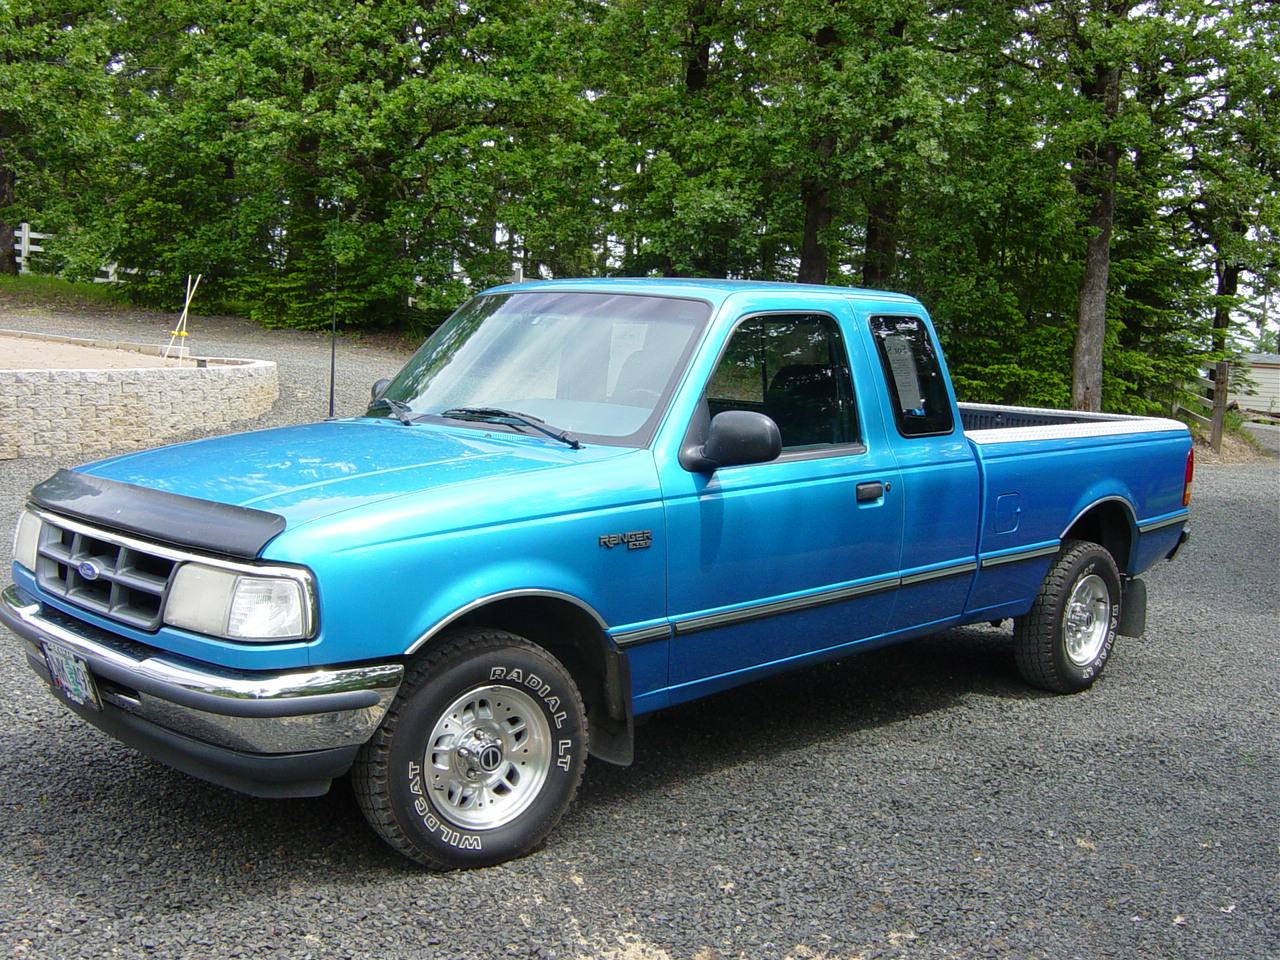 1994 Ford ranger extended cab wheelbase #8